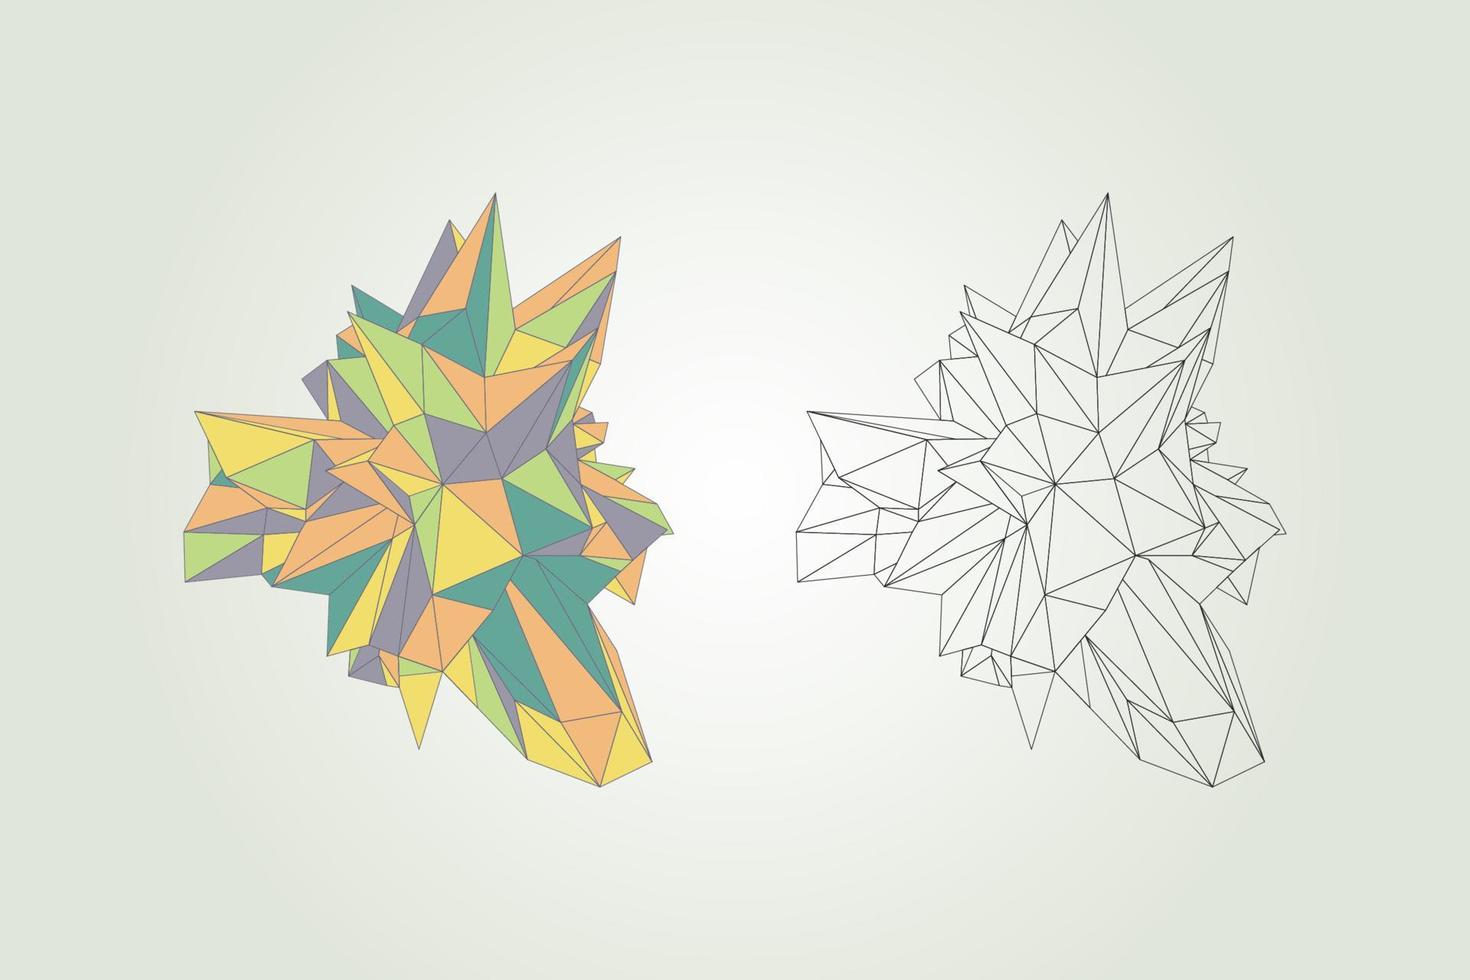 objets géométriques abstraits. formes polygonales linéaires design décoratif isolé vecteur